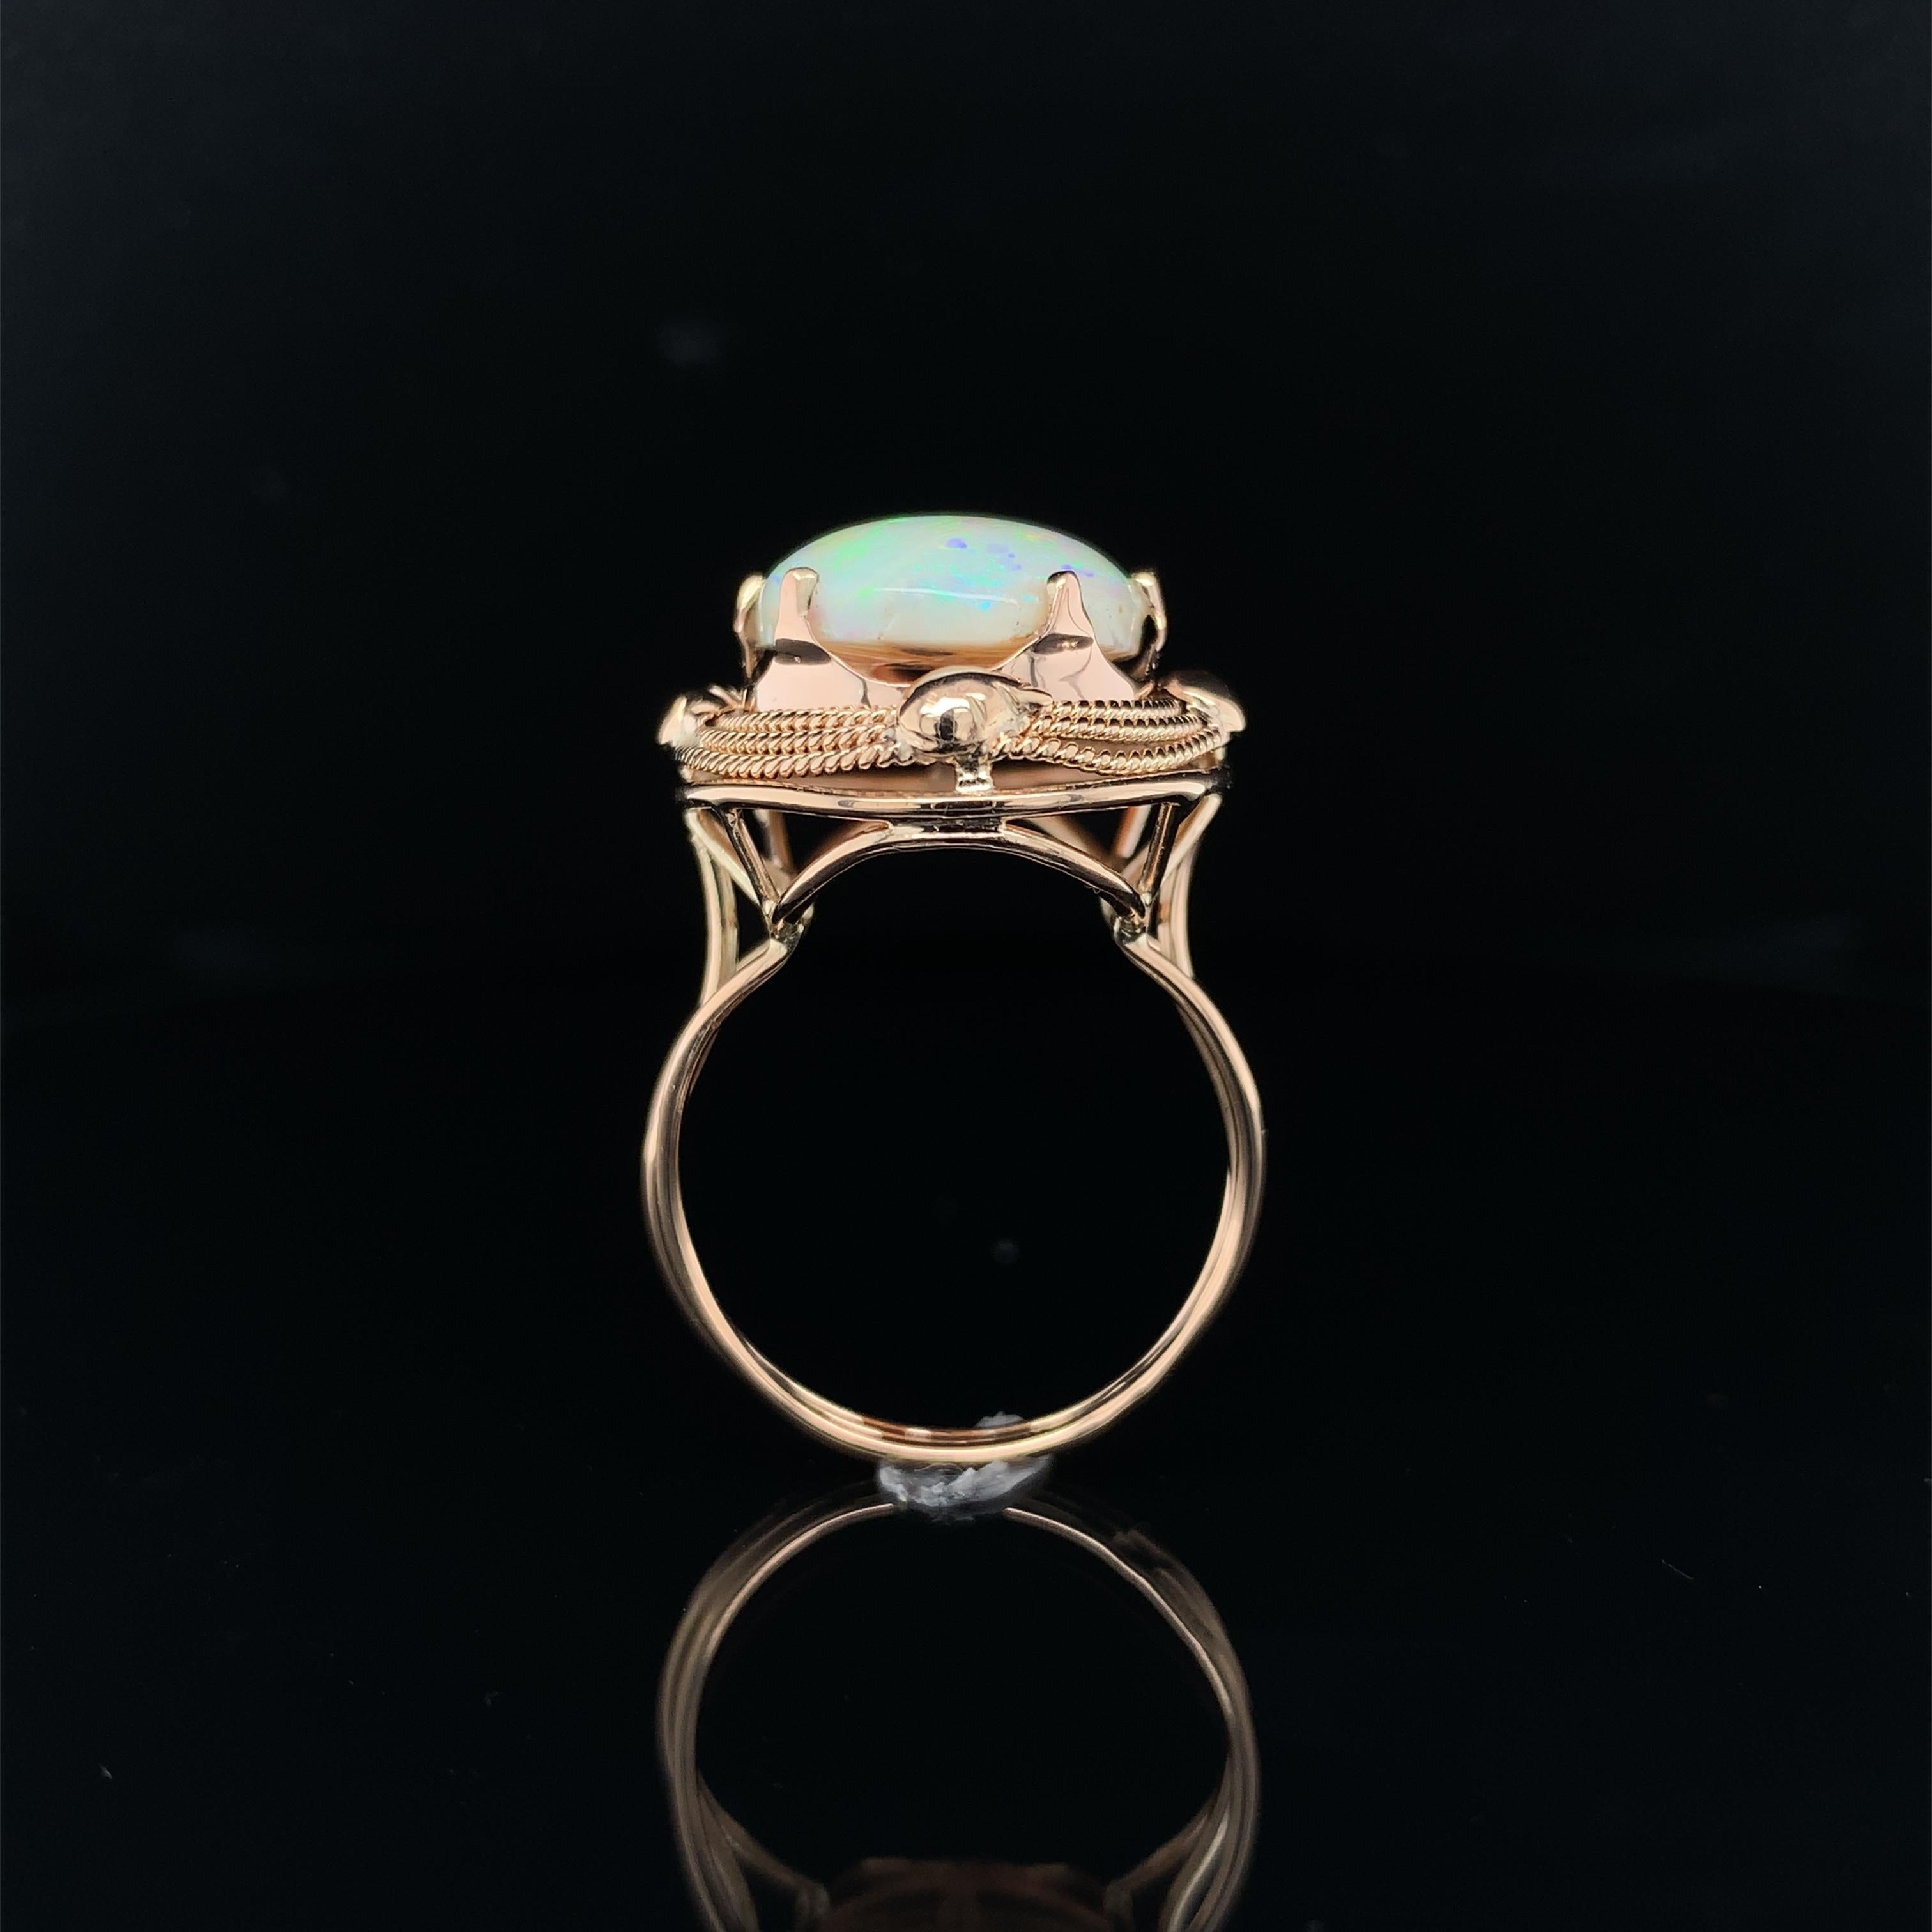 Vintage 14K Rose Gold 6,05 Karat Opal Ring. Der echte natürliche australische Opal misst etwa 17 mm x 12 mm. Der Opal ist frisch poliert und hat vor allem rosa und grüne Farbspiele, mit Blitzen aller Farben. Der Ring ist handgeschmiedet und besteht